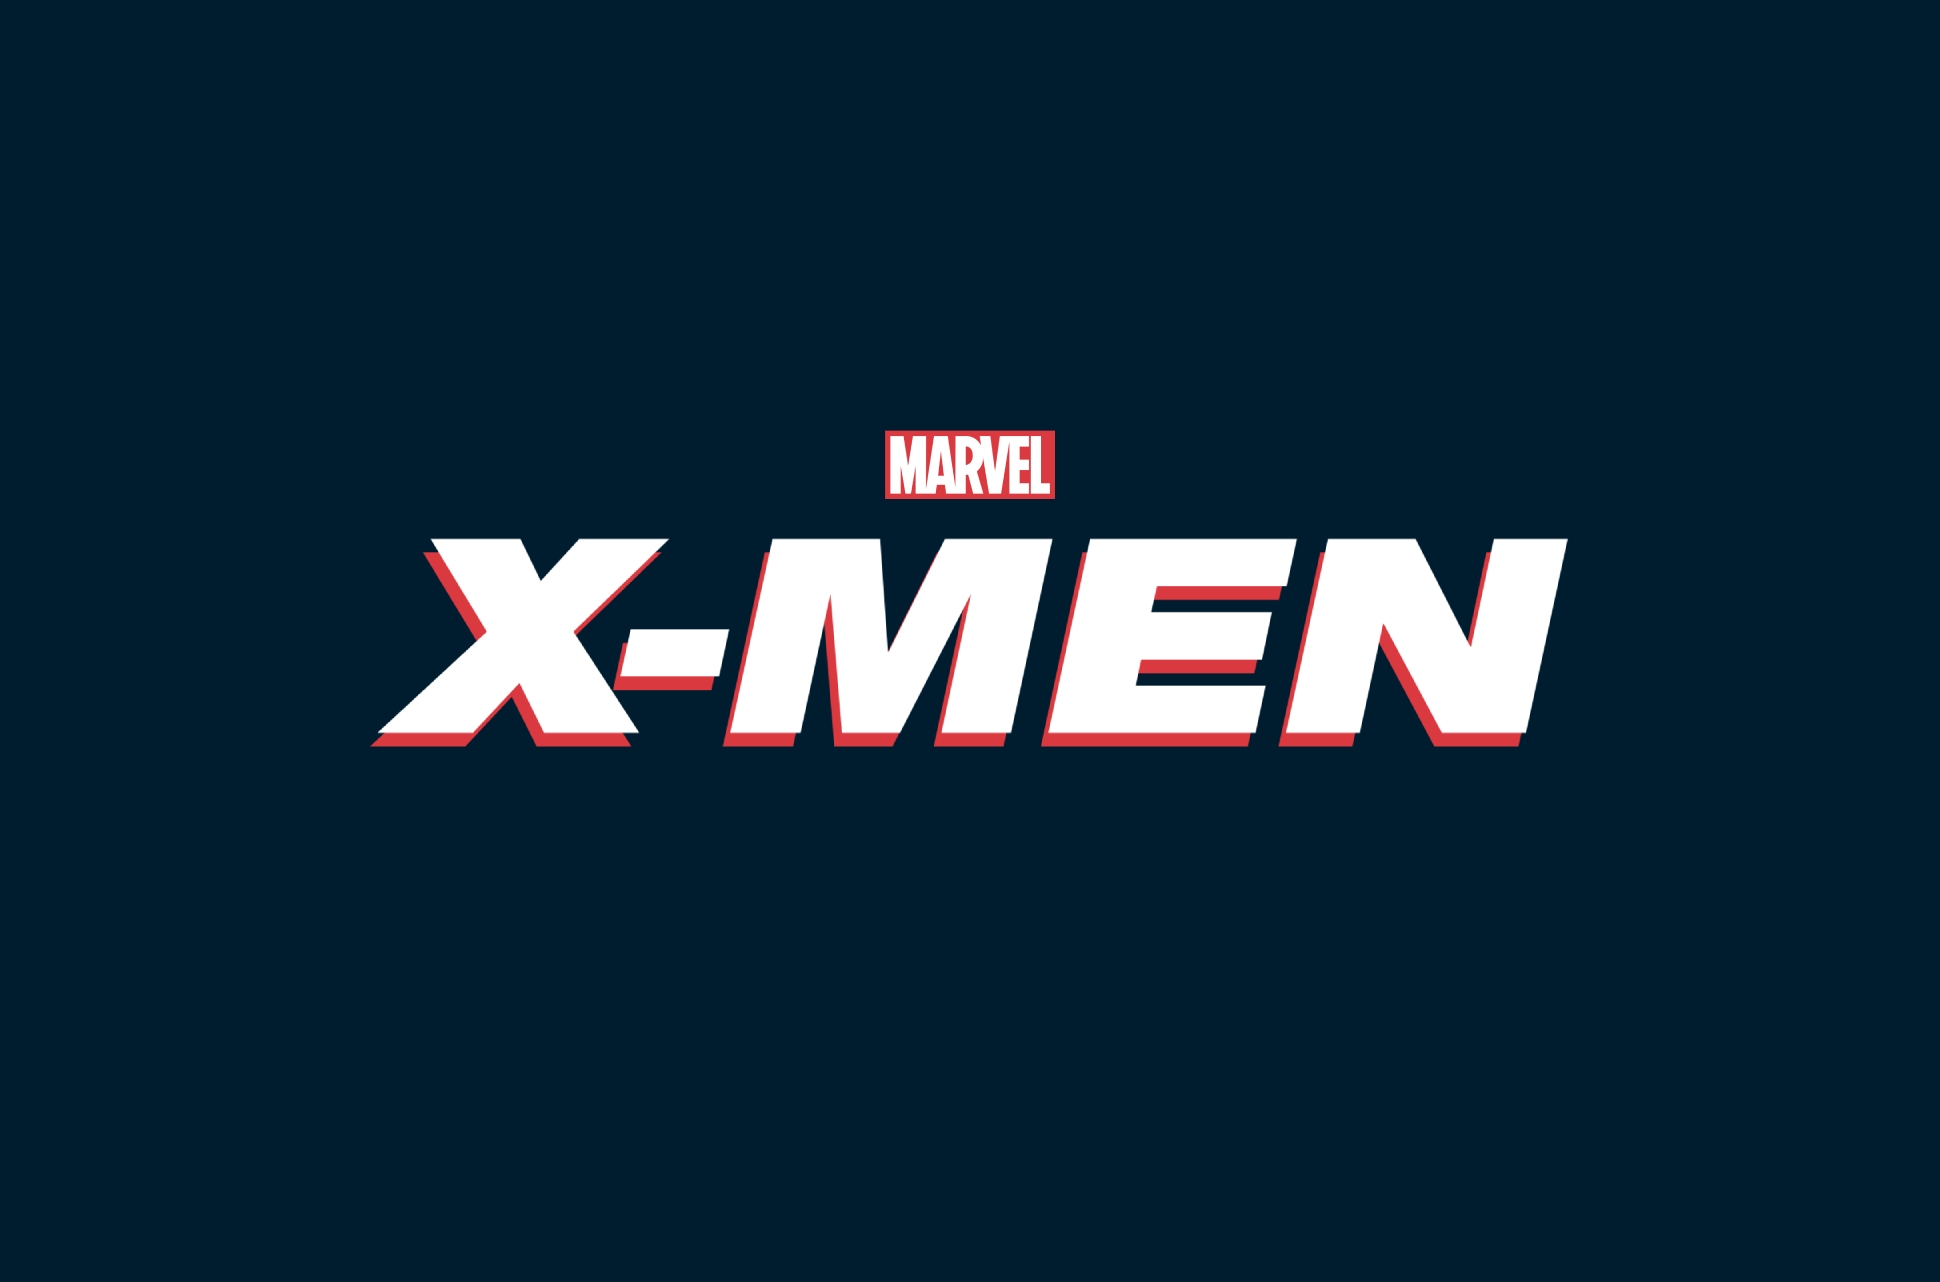 Marvel/Fox X-Men films.